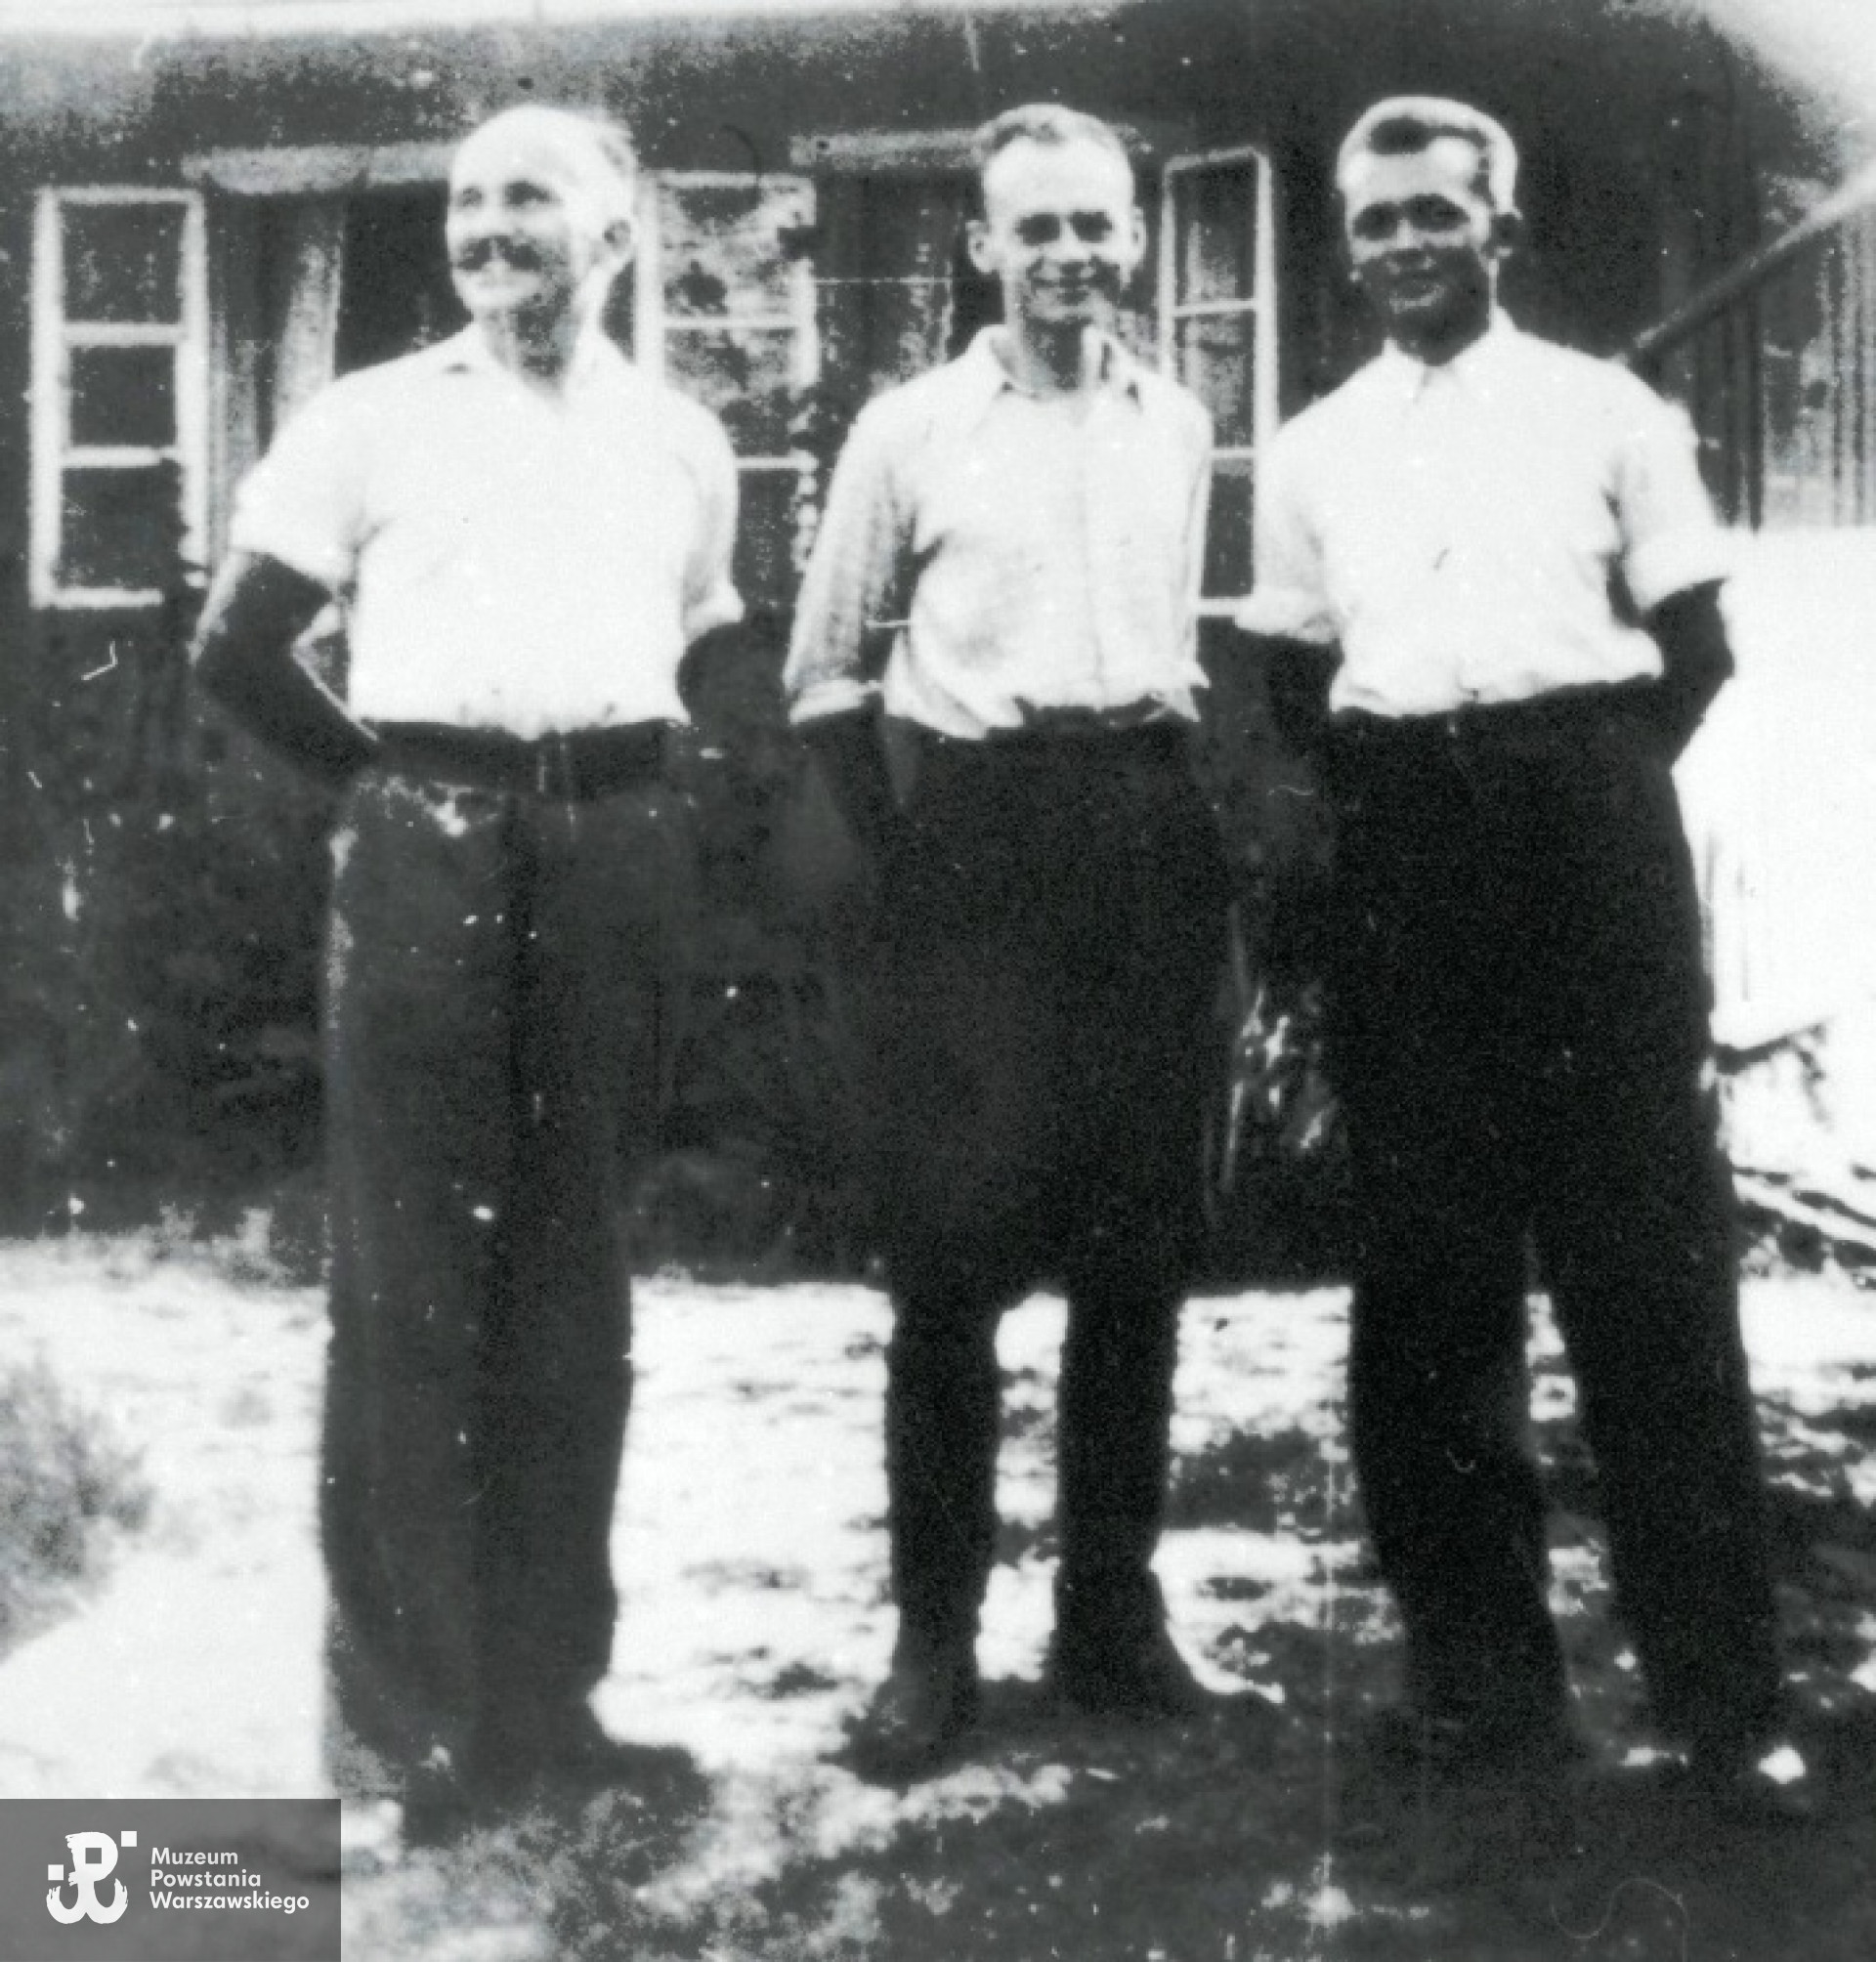 Uciekinierzy z Auschwitz przed domem Państwa Serafińskich w Nowym Wiśniczu, lato 1943 r. Stoją od lewej: Jan Redzej, Witold Pilecki, Edward Ciesielski. Źródło fot. <i>www.pilecki.ipn.gov.pl</i>